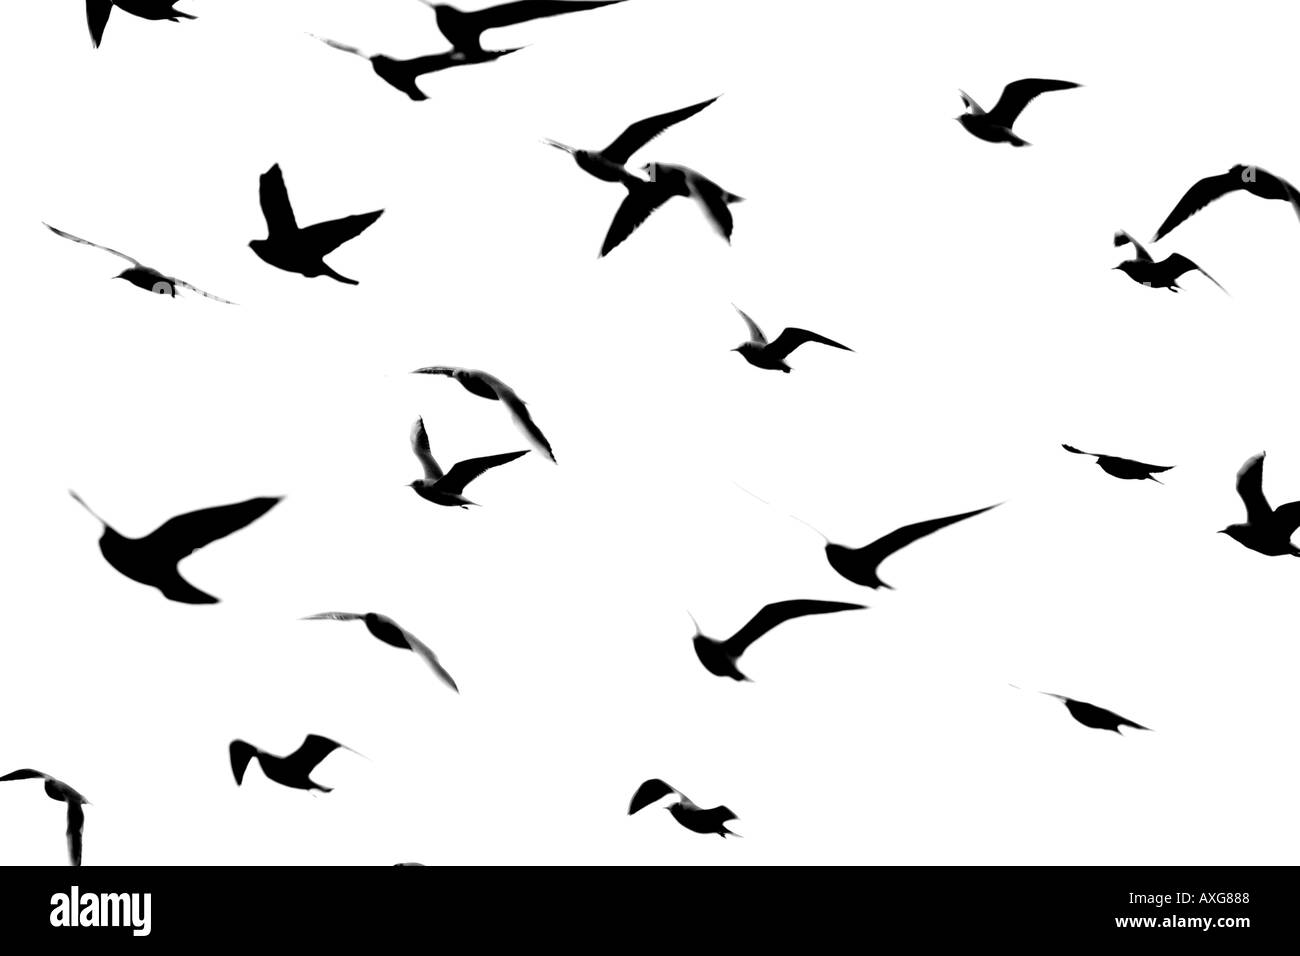 Aves volando silueta Imágenes de stock en blanco y negro - Alamy